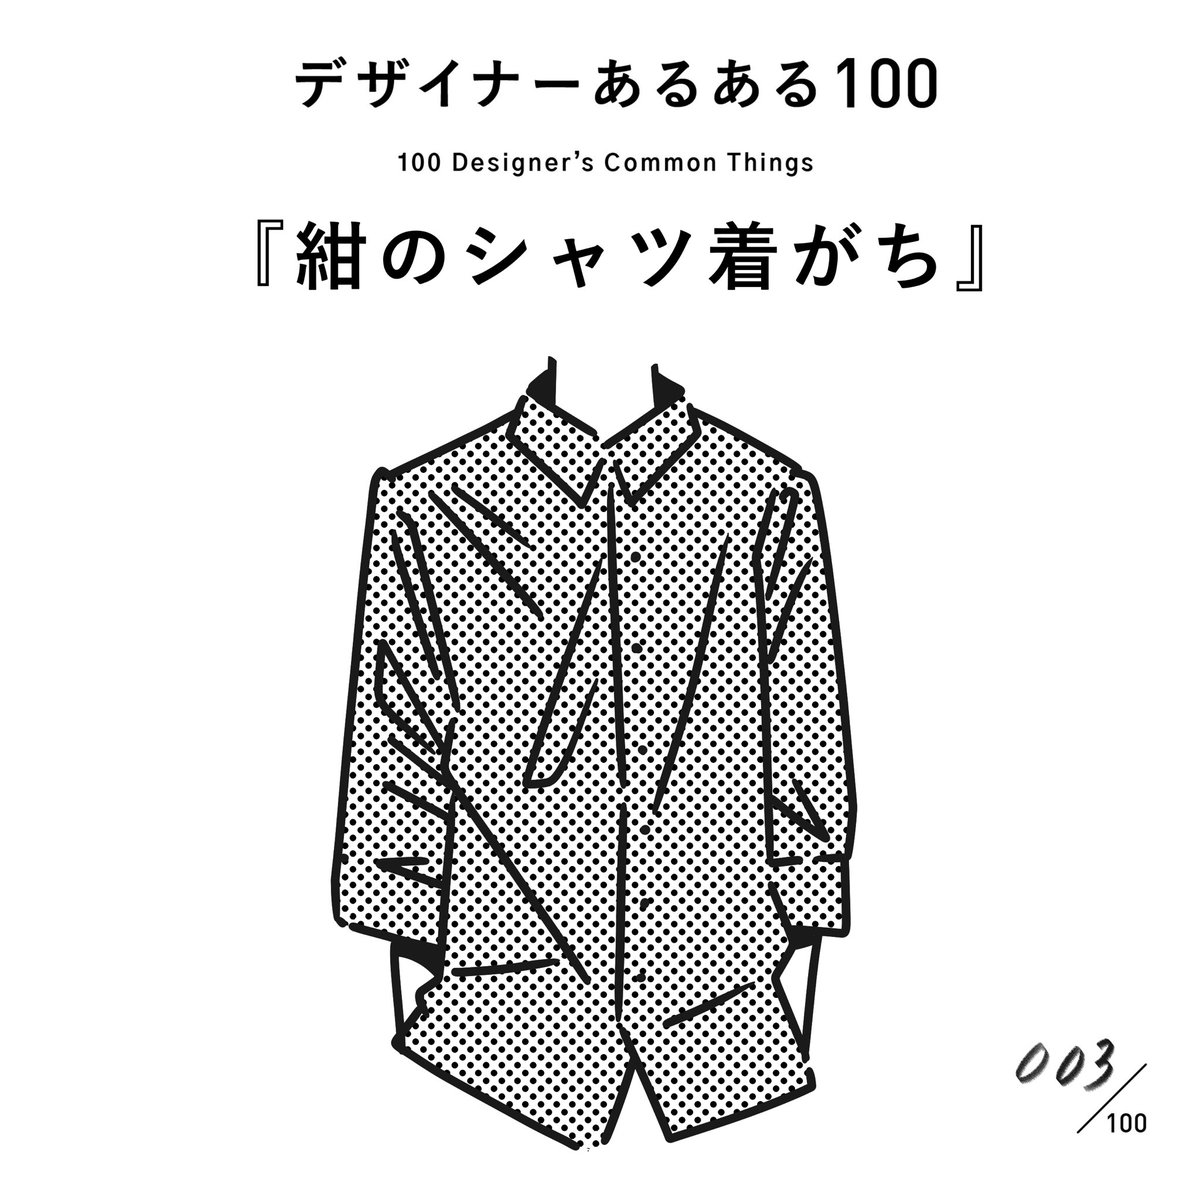 #デザイナーあるある 
【003.紺のシャツ着がち】

一家に一枚は必ず紺色の襟付きシャツがある。暗めの服着がち。アースカラーの服着がち。

(※村田の私見です)
#デザイン漫画 #デザイナーあるある募集中 #デザイン 